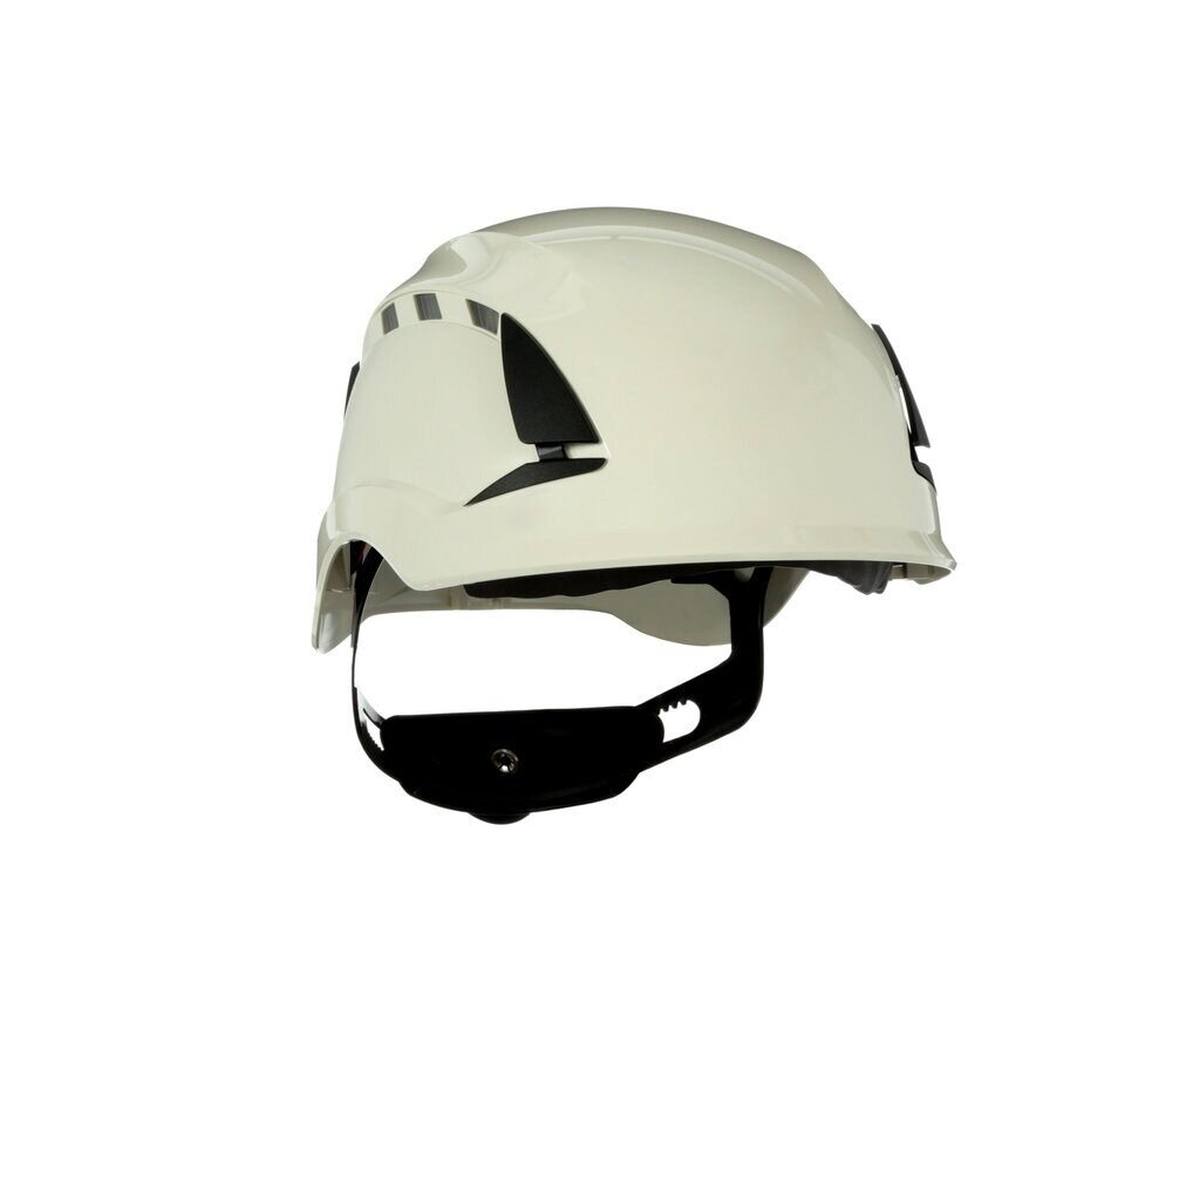 3M SecureFit casque de protection, X5507VE-CE, orange, non ventilé, CE